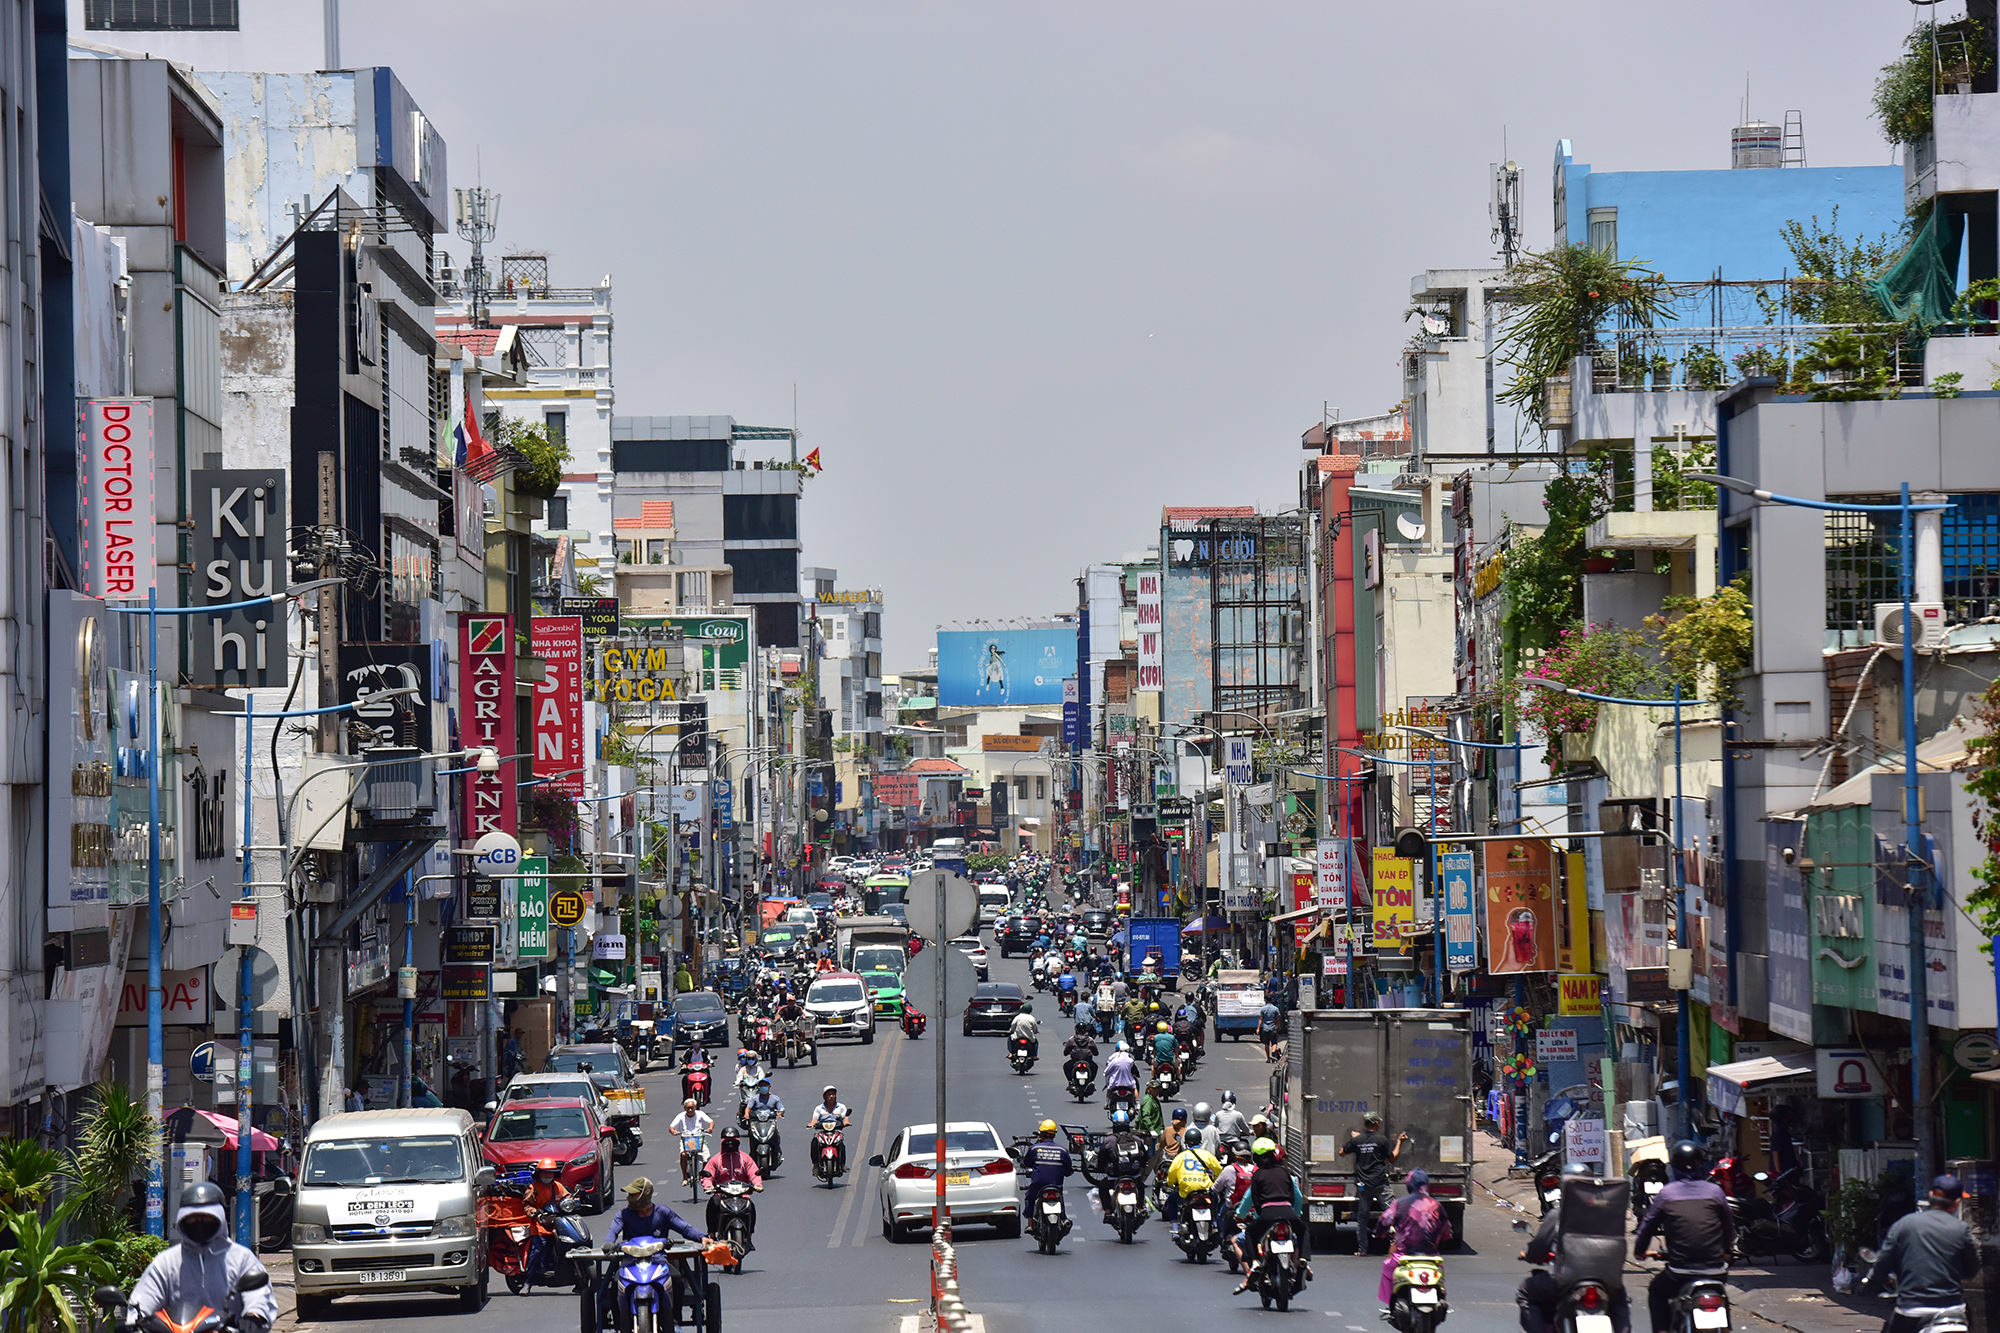 Từ cầu Kiệu, đường Phan Đình Phùng tiếp nối kéo dài tới Ngã tư Phú Nhuận, quận Phú Nhuận sau khi được mở rộng, cho xe chạy hai chiều với mật độ giao thông rất lớn nhưng hai bên vỉa hè không hề có một cây xanh.